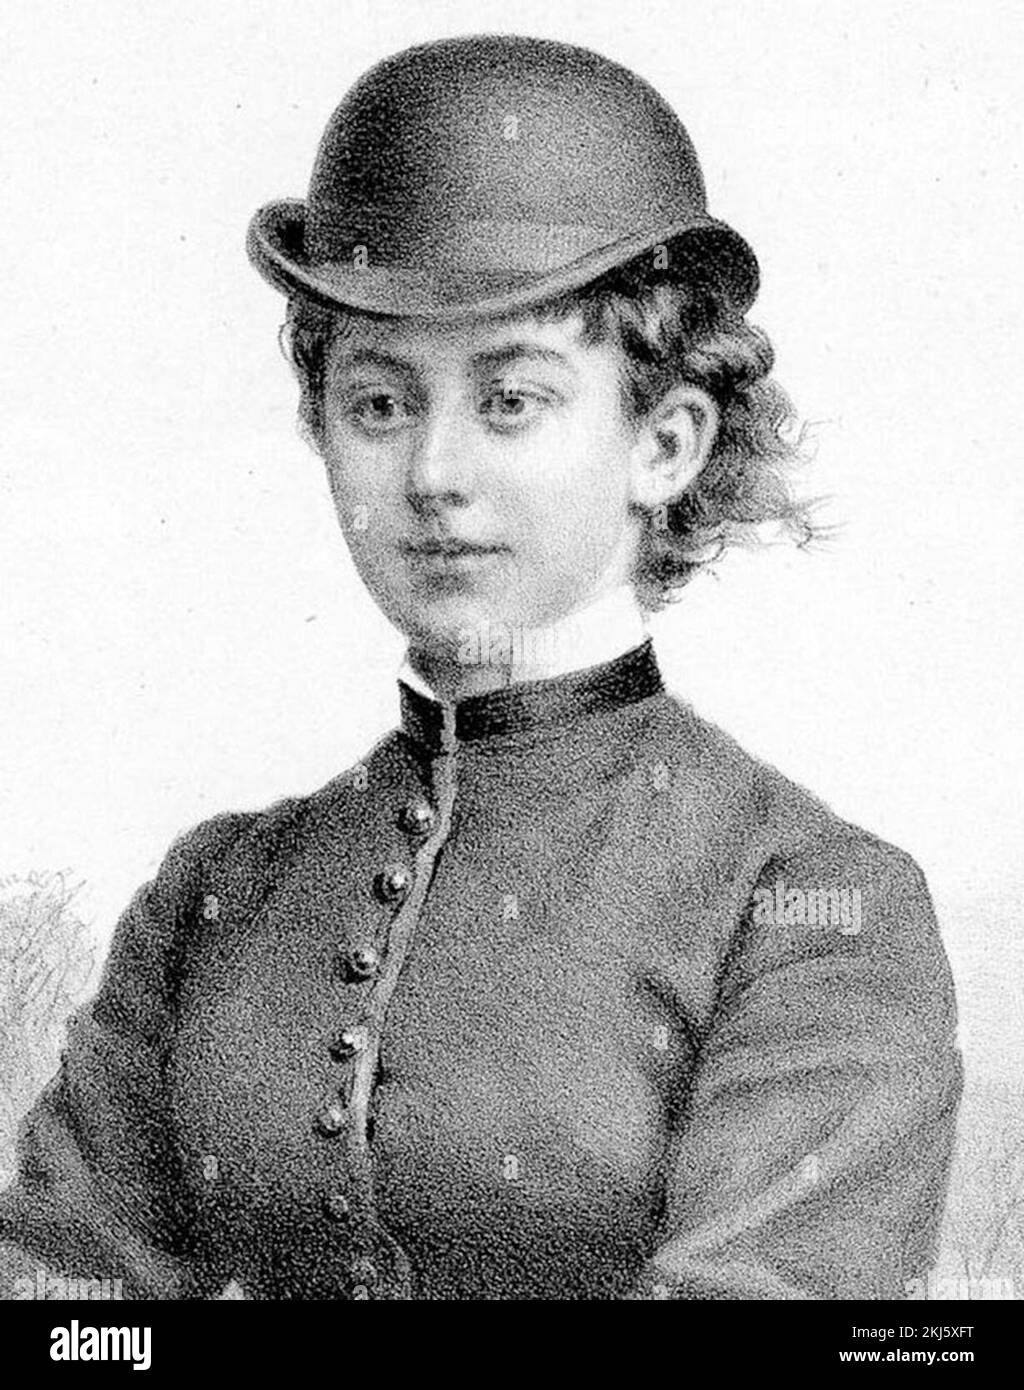 Lady Florence Caroline Dixie (1855 – 1905) écrivaine écossaise, correspondante de guerre et féministe. Banque D'Images